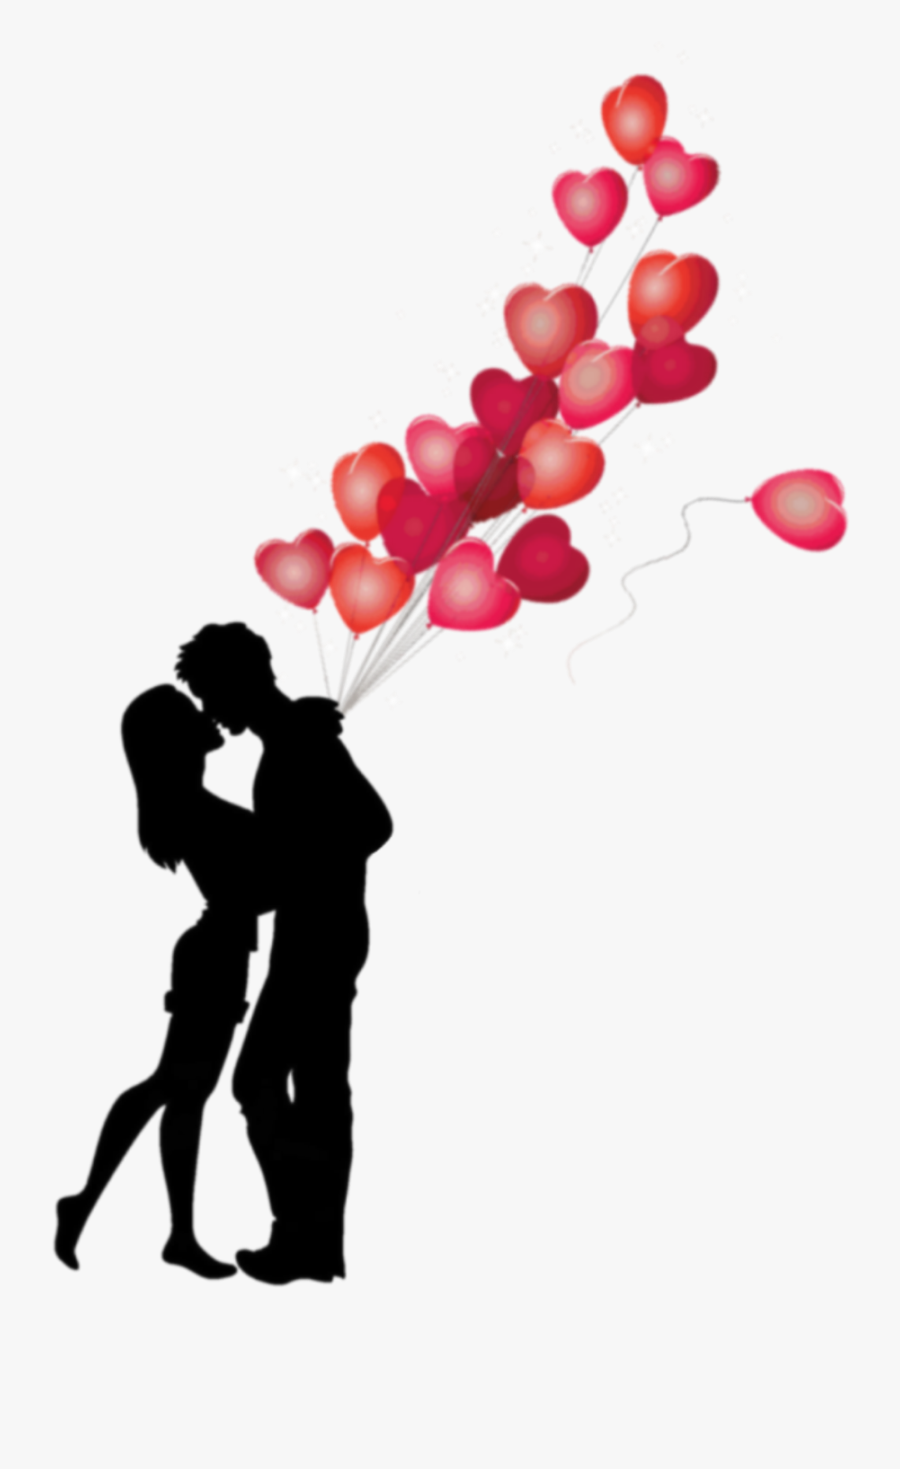 #love #hearts #silhouette - Romantic Love Transparent Png, Transparent Clipart